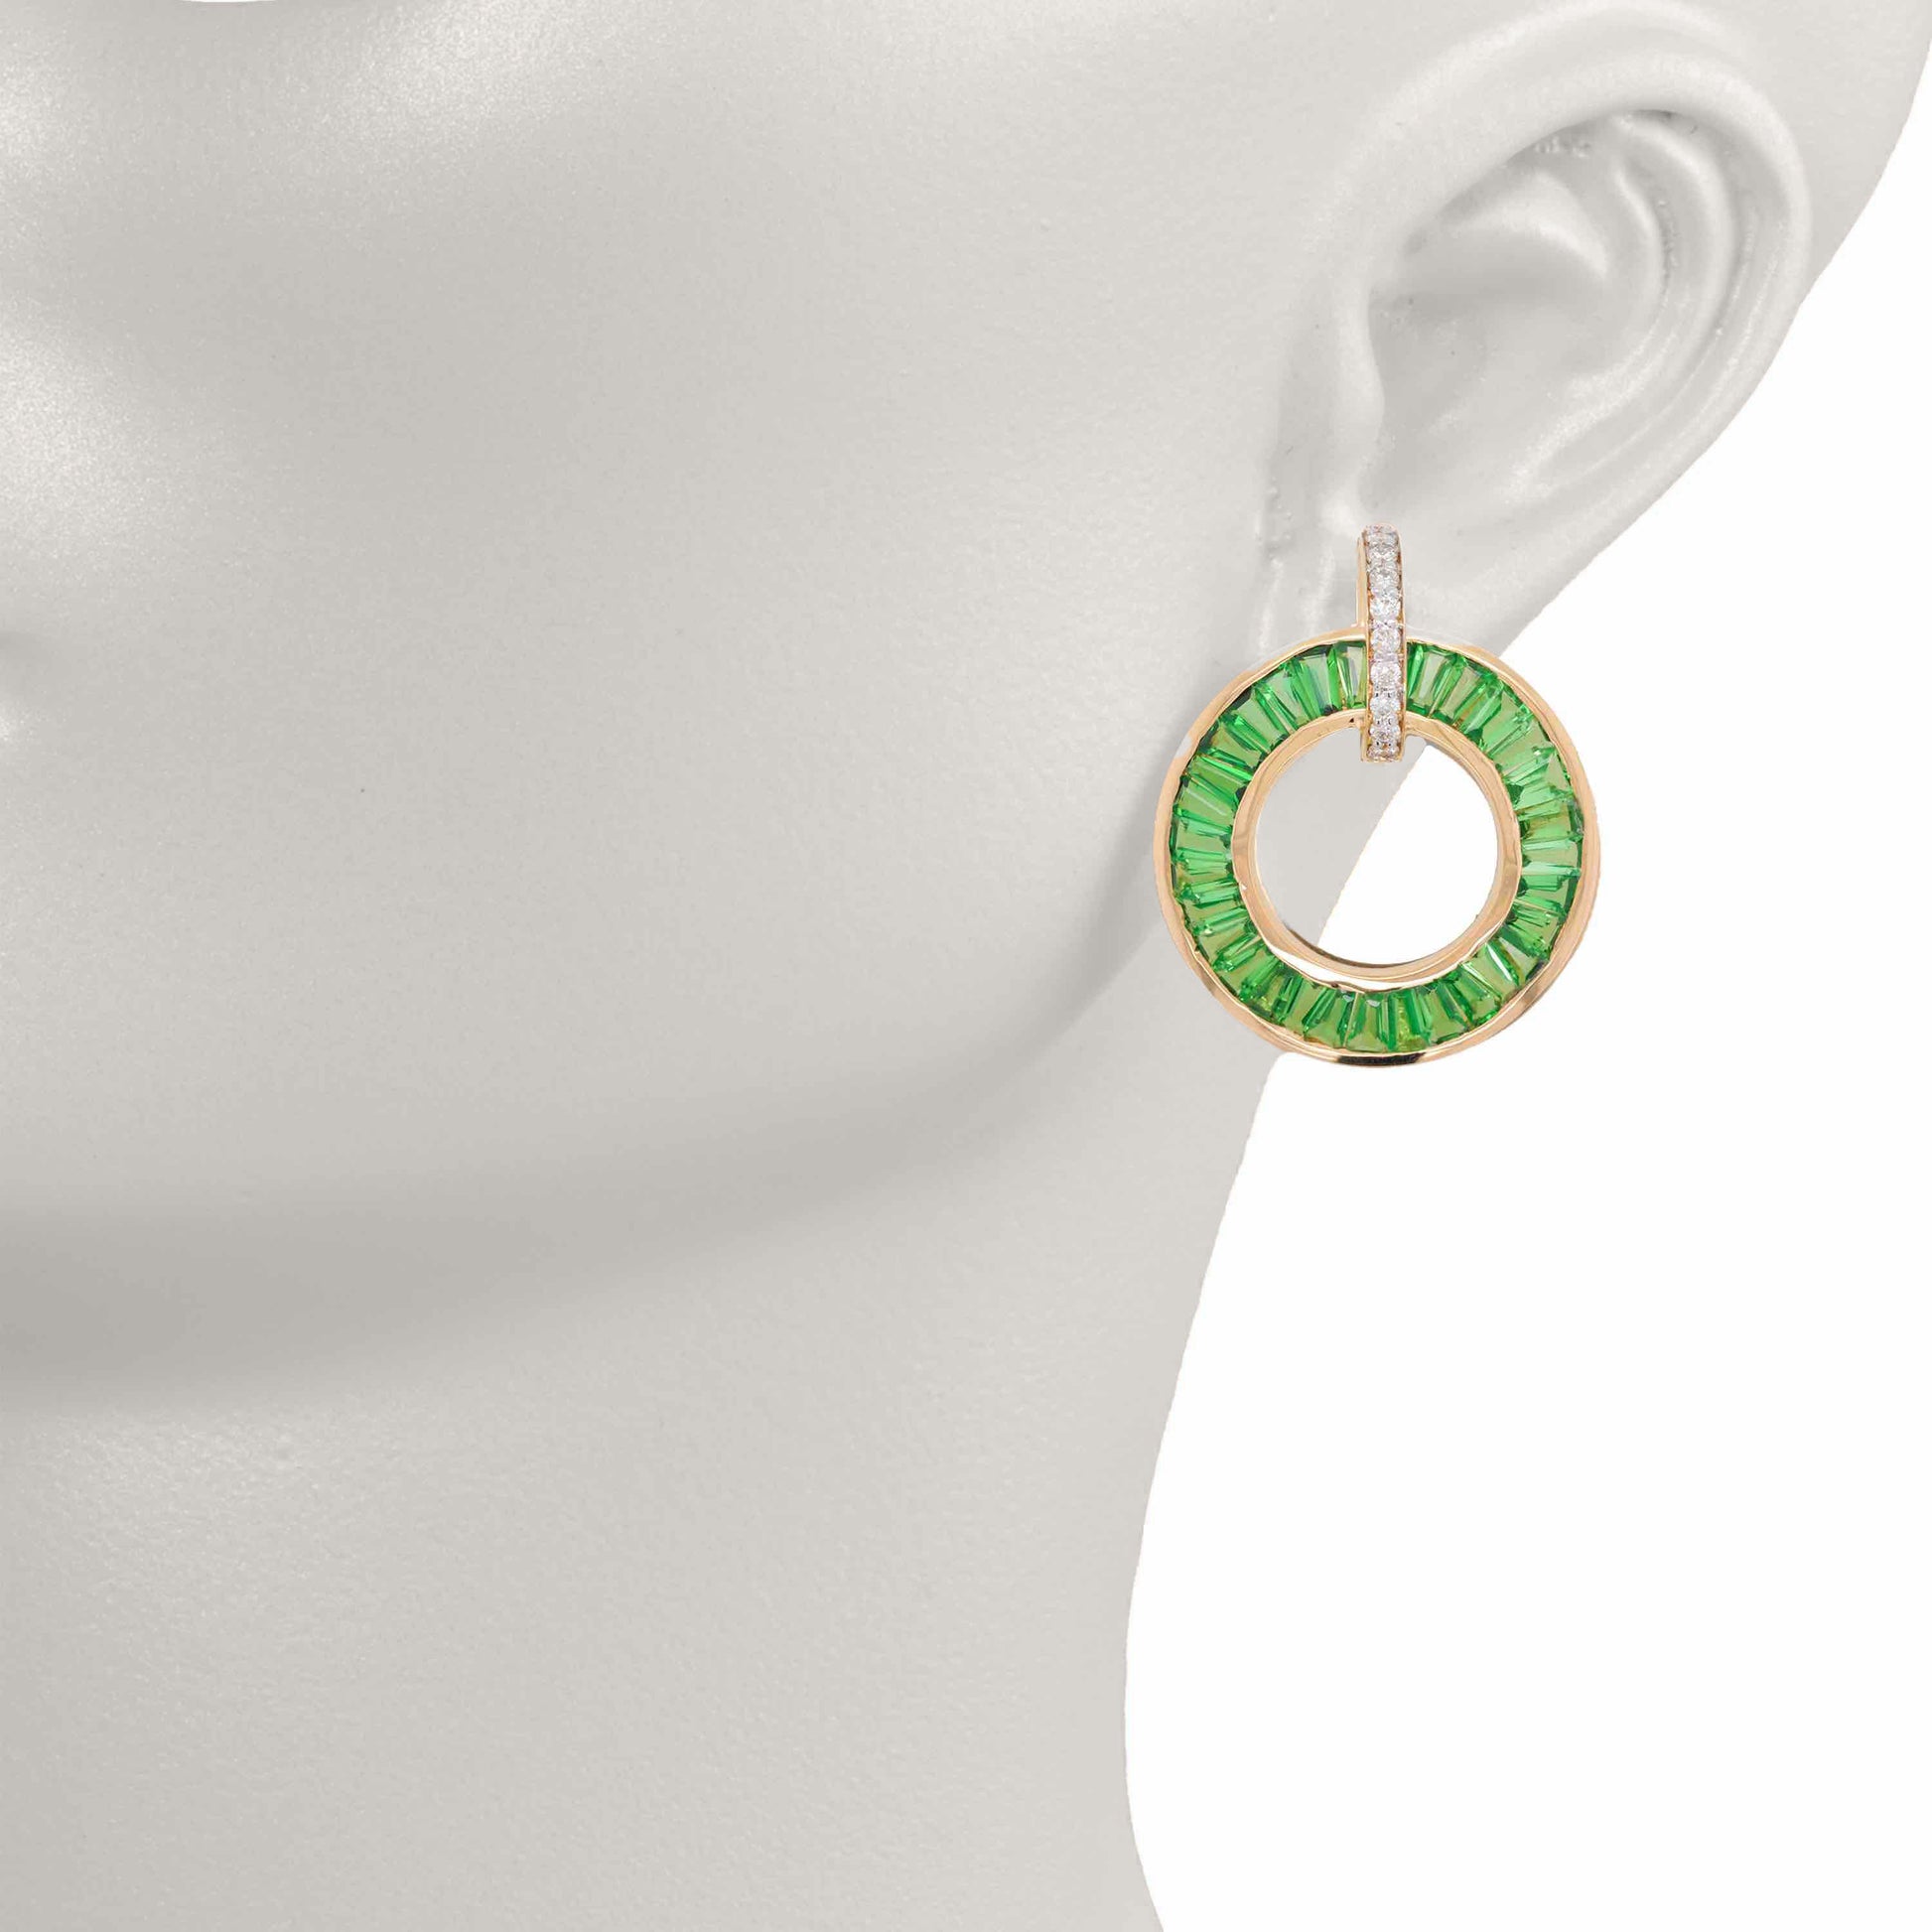 circle stud earrings